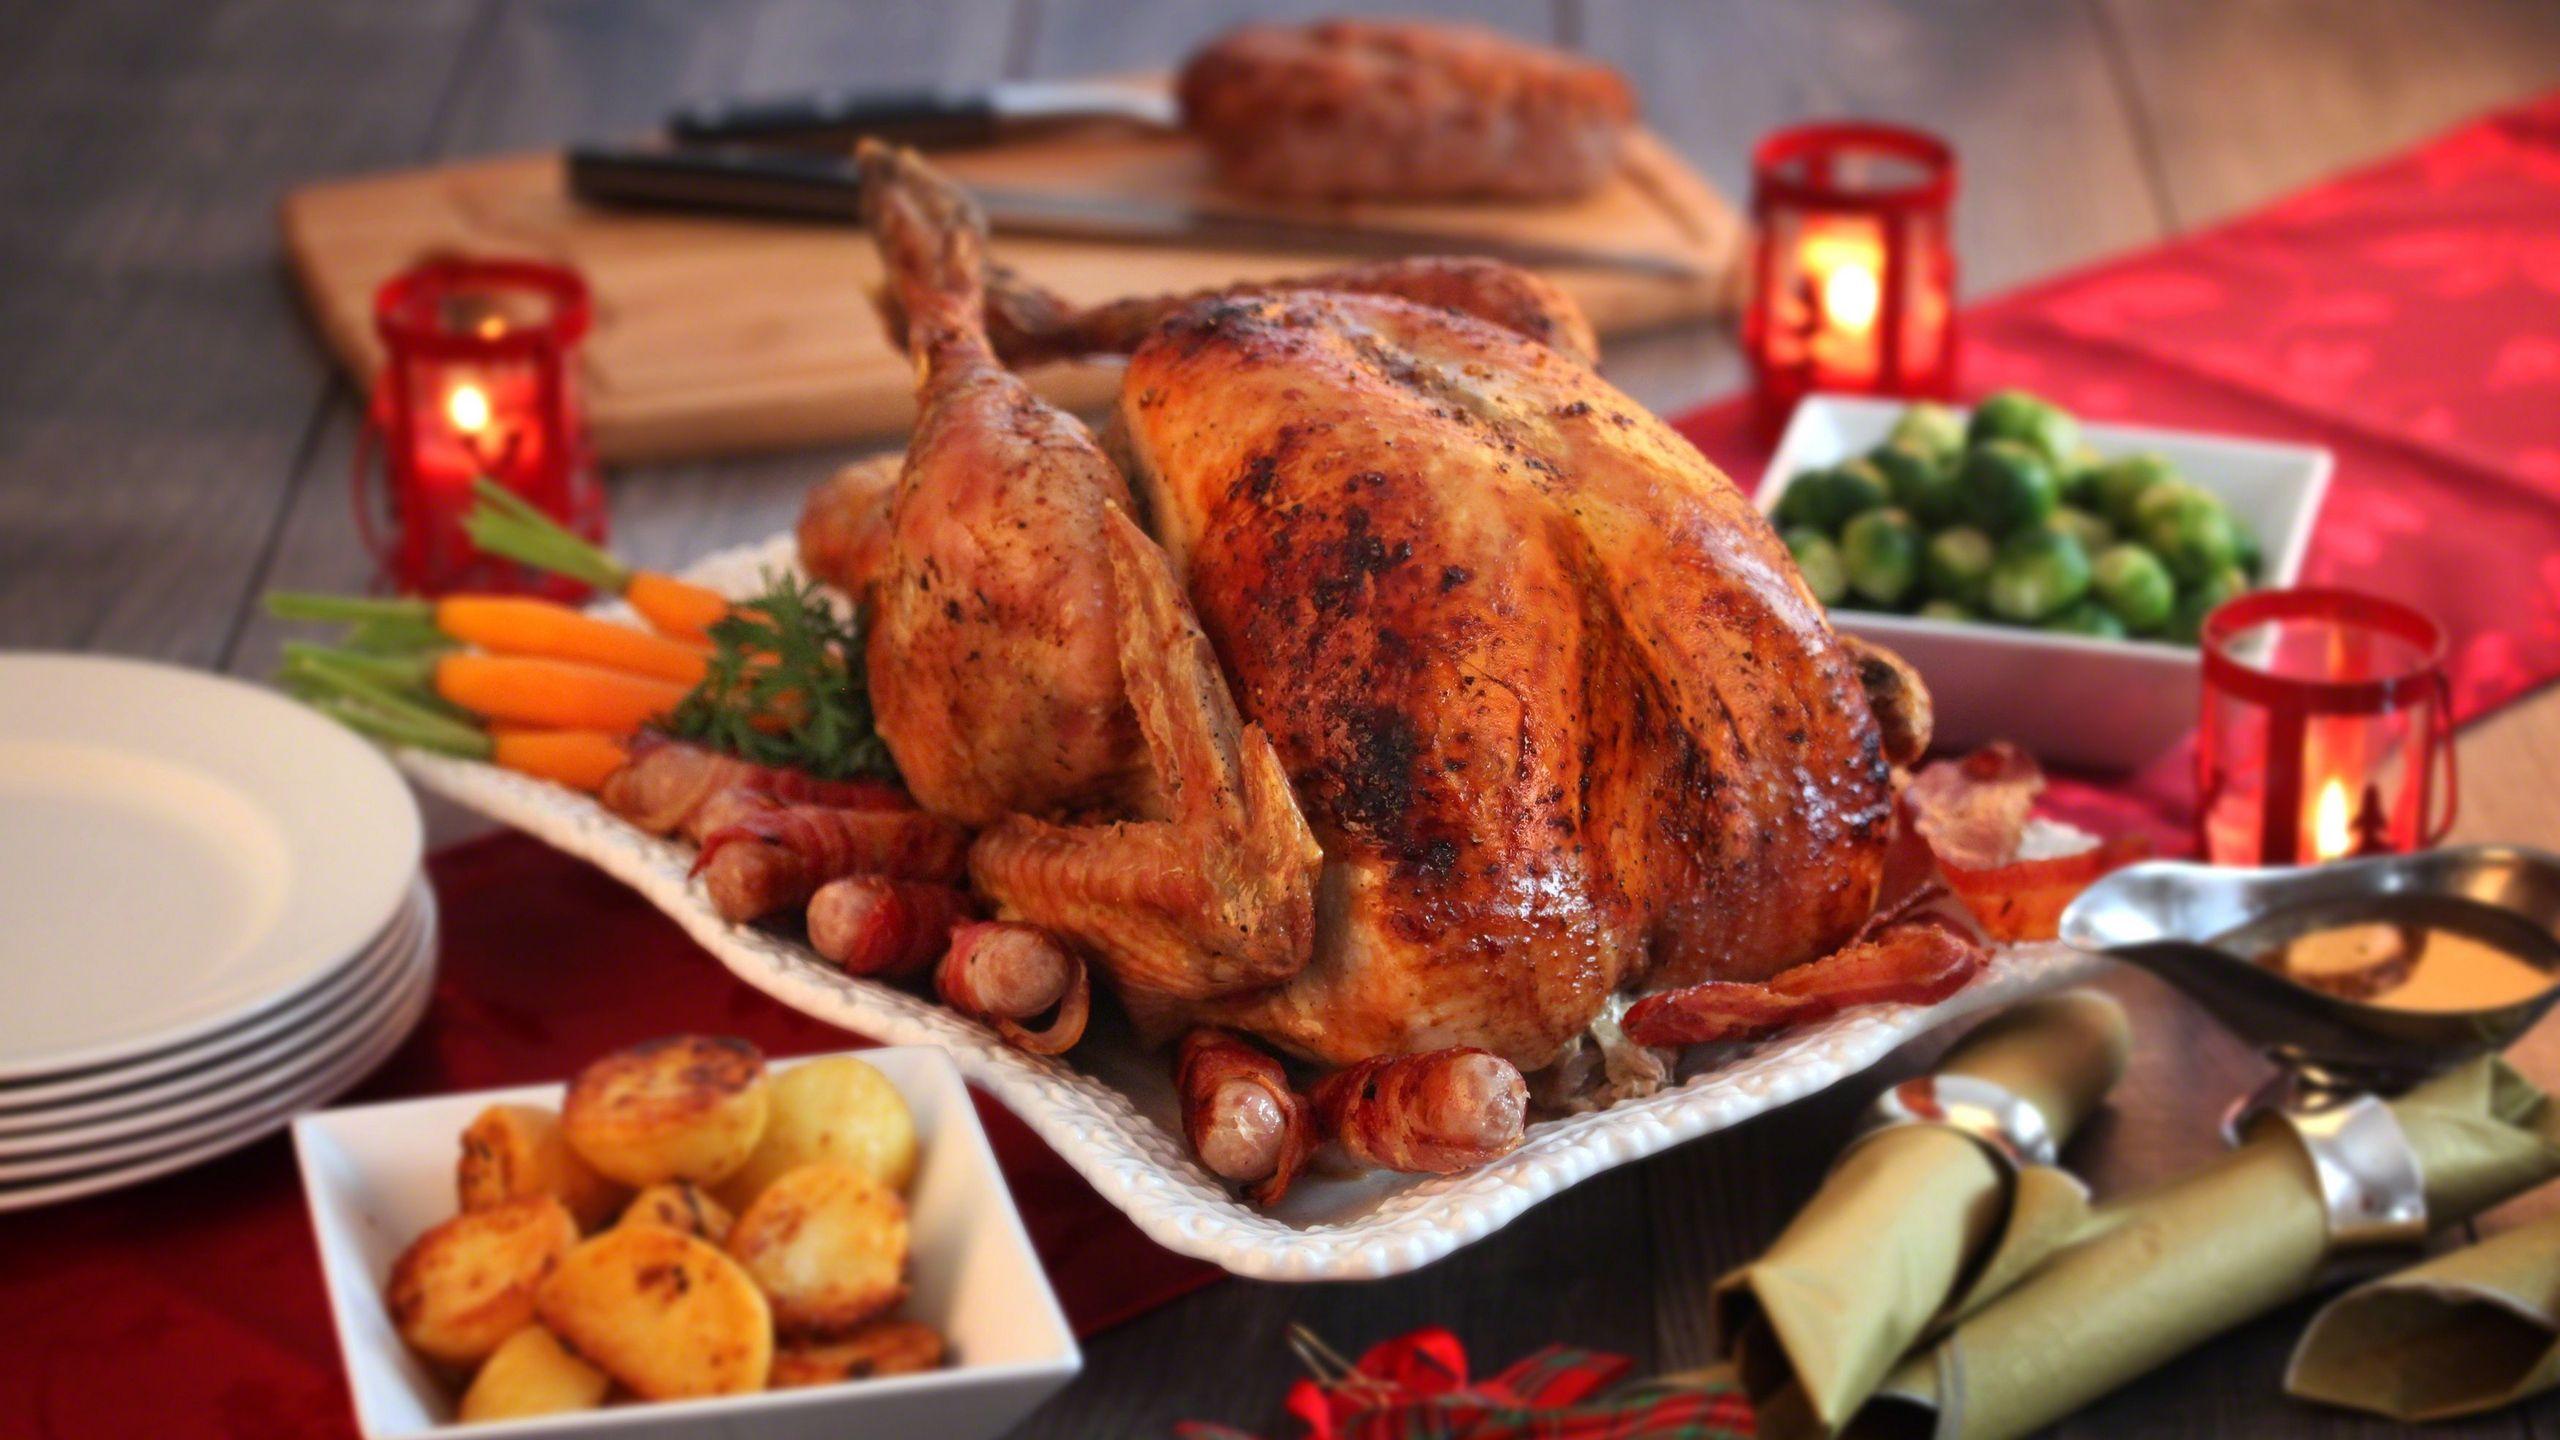 Download wallpaper 2560x1440 turkey, roast, poultry, dinner